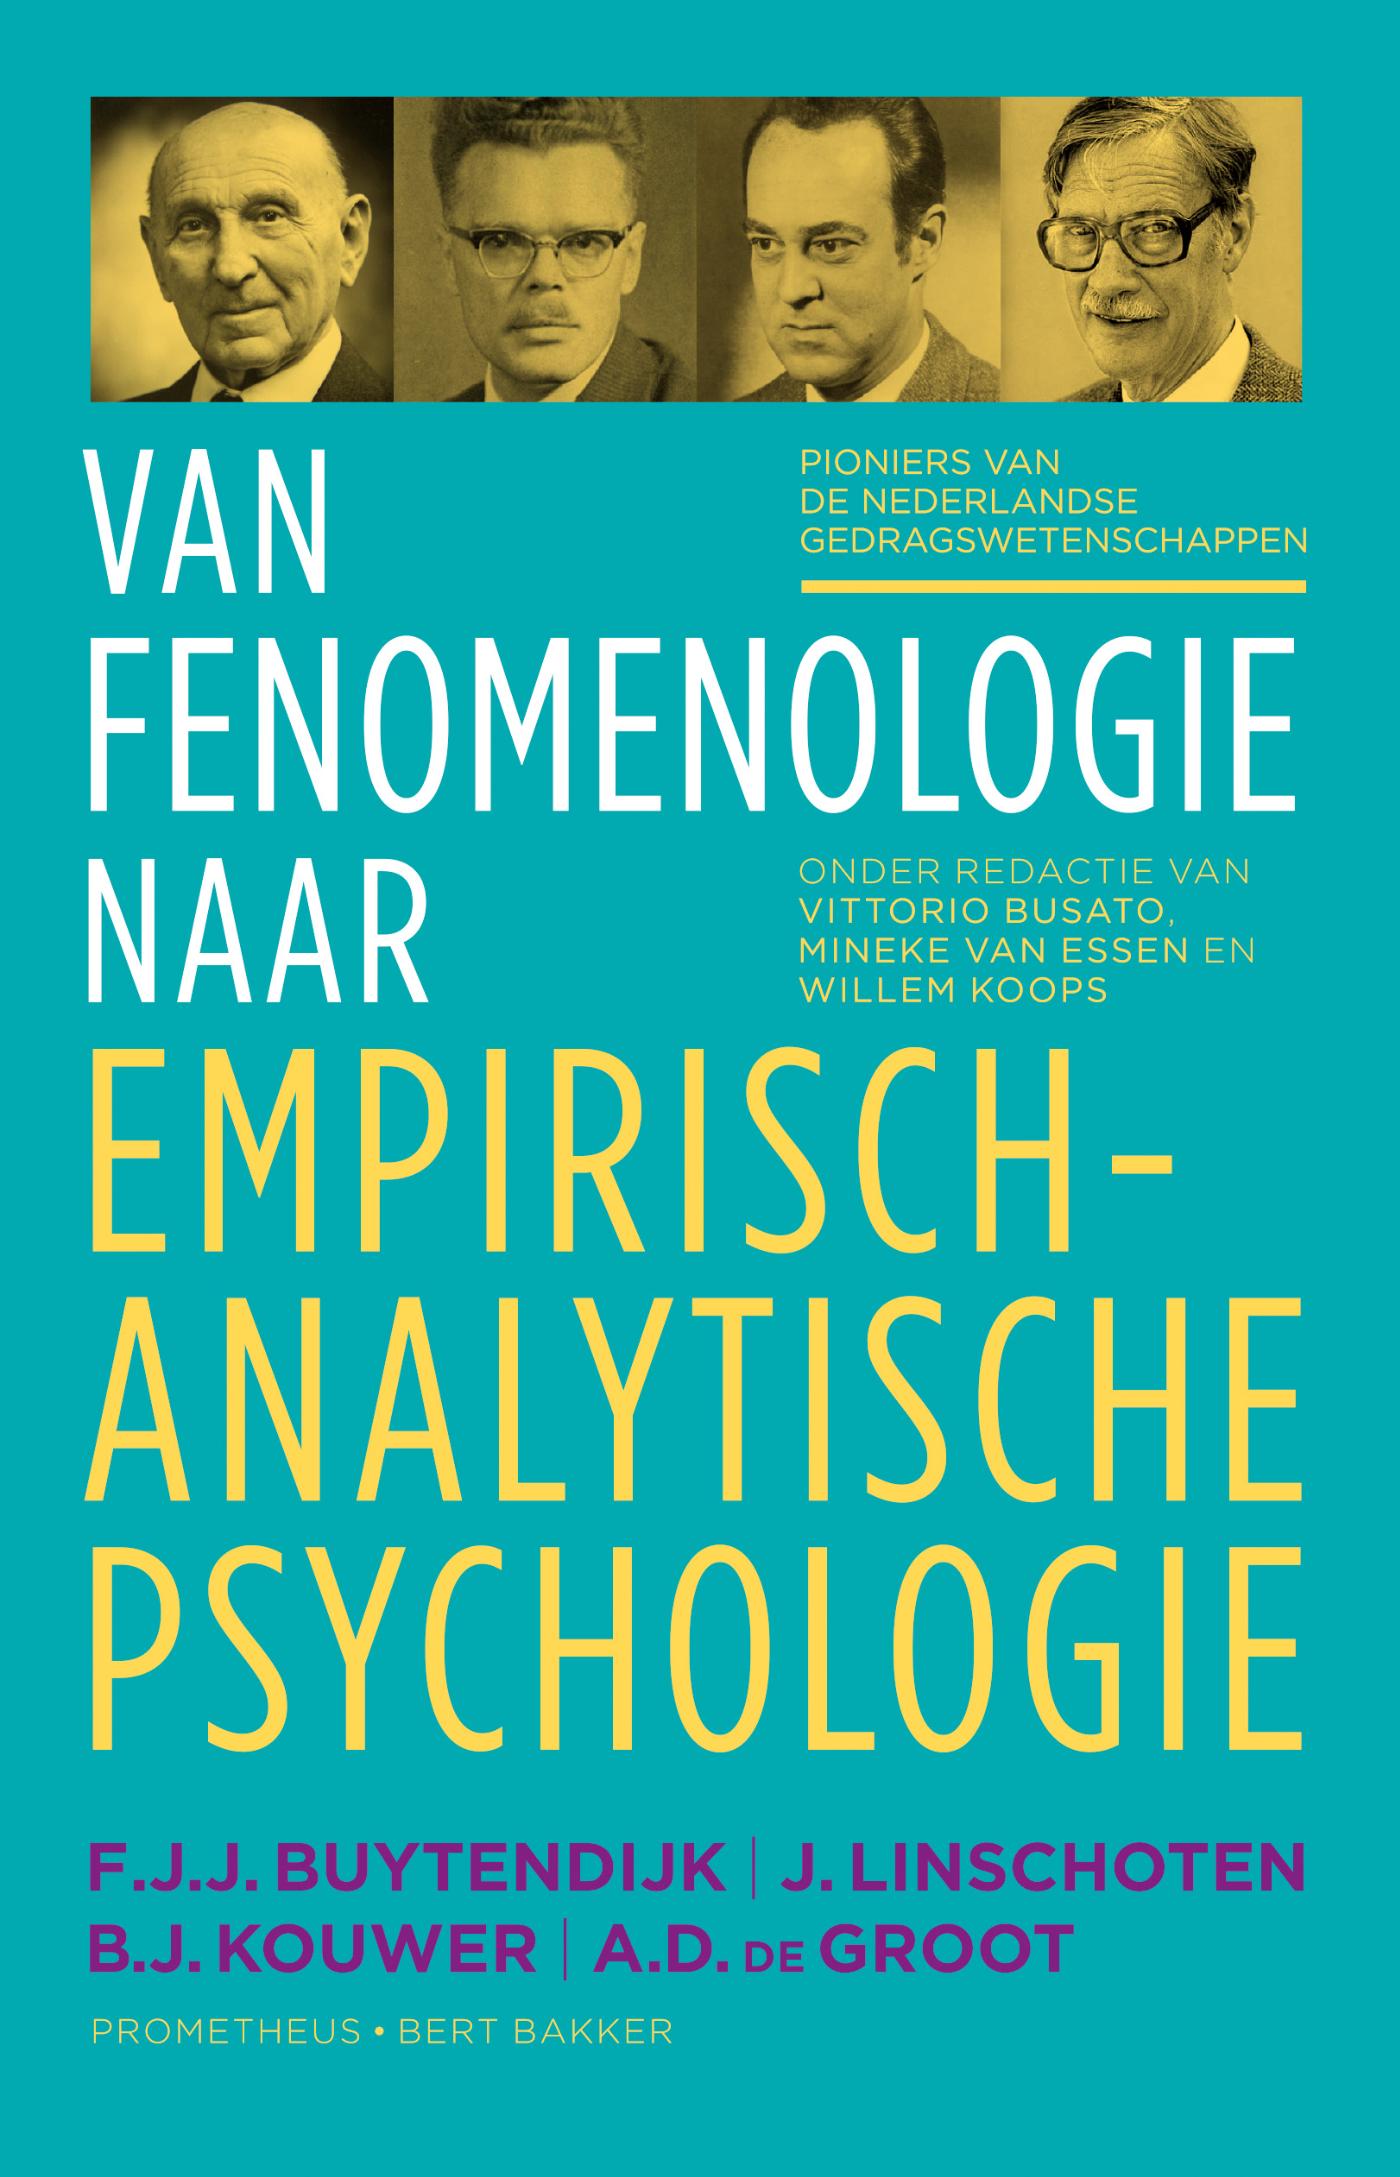 Van fenomenologie naar empirisch-analytische psychologie (Ebook)